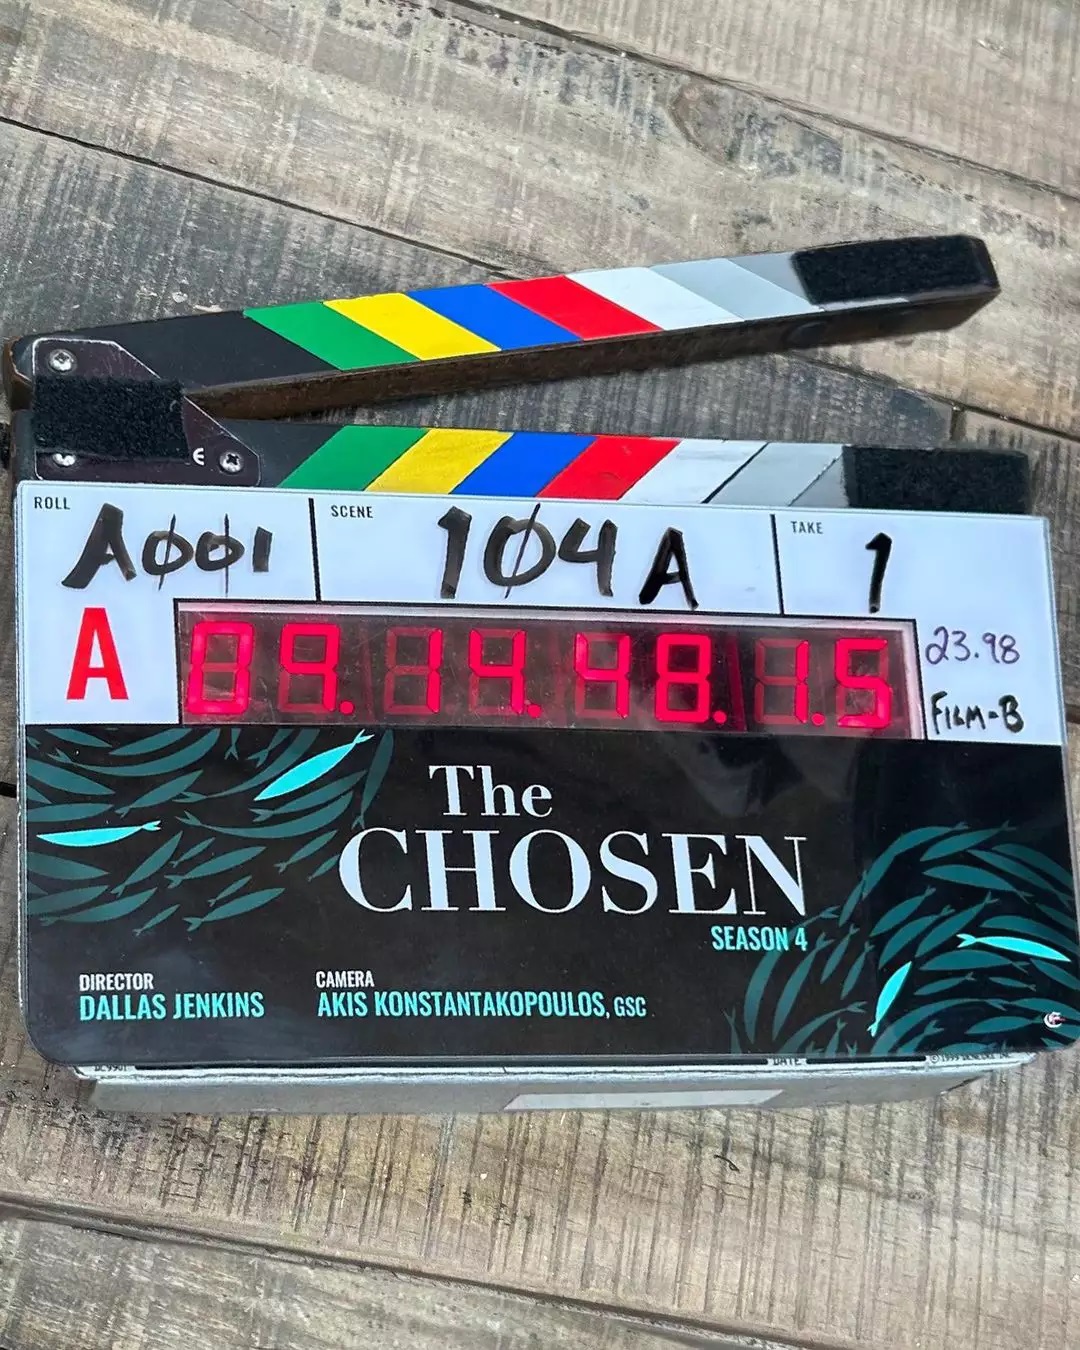 A terceira temporada da série The Chosen estreia hoje nos cinemas do Brasil  - Portal Cristão MG